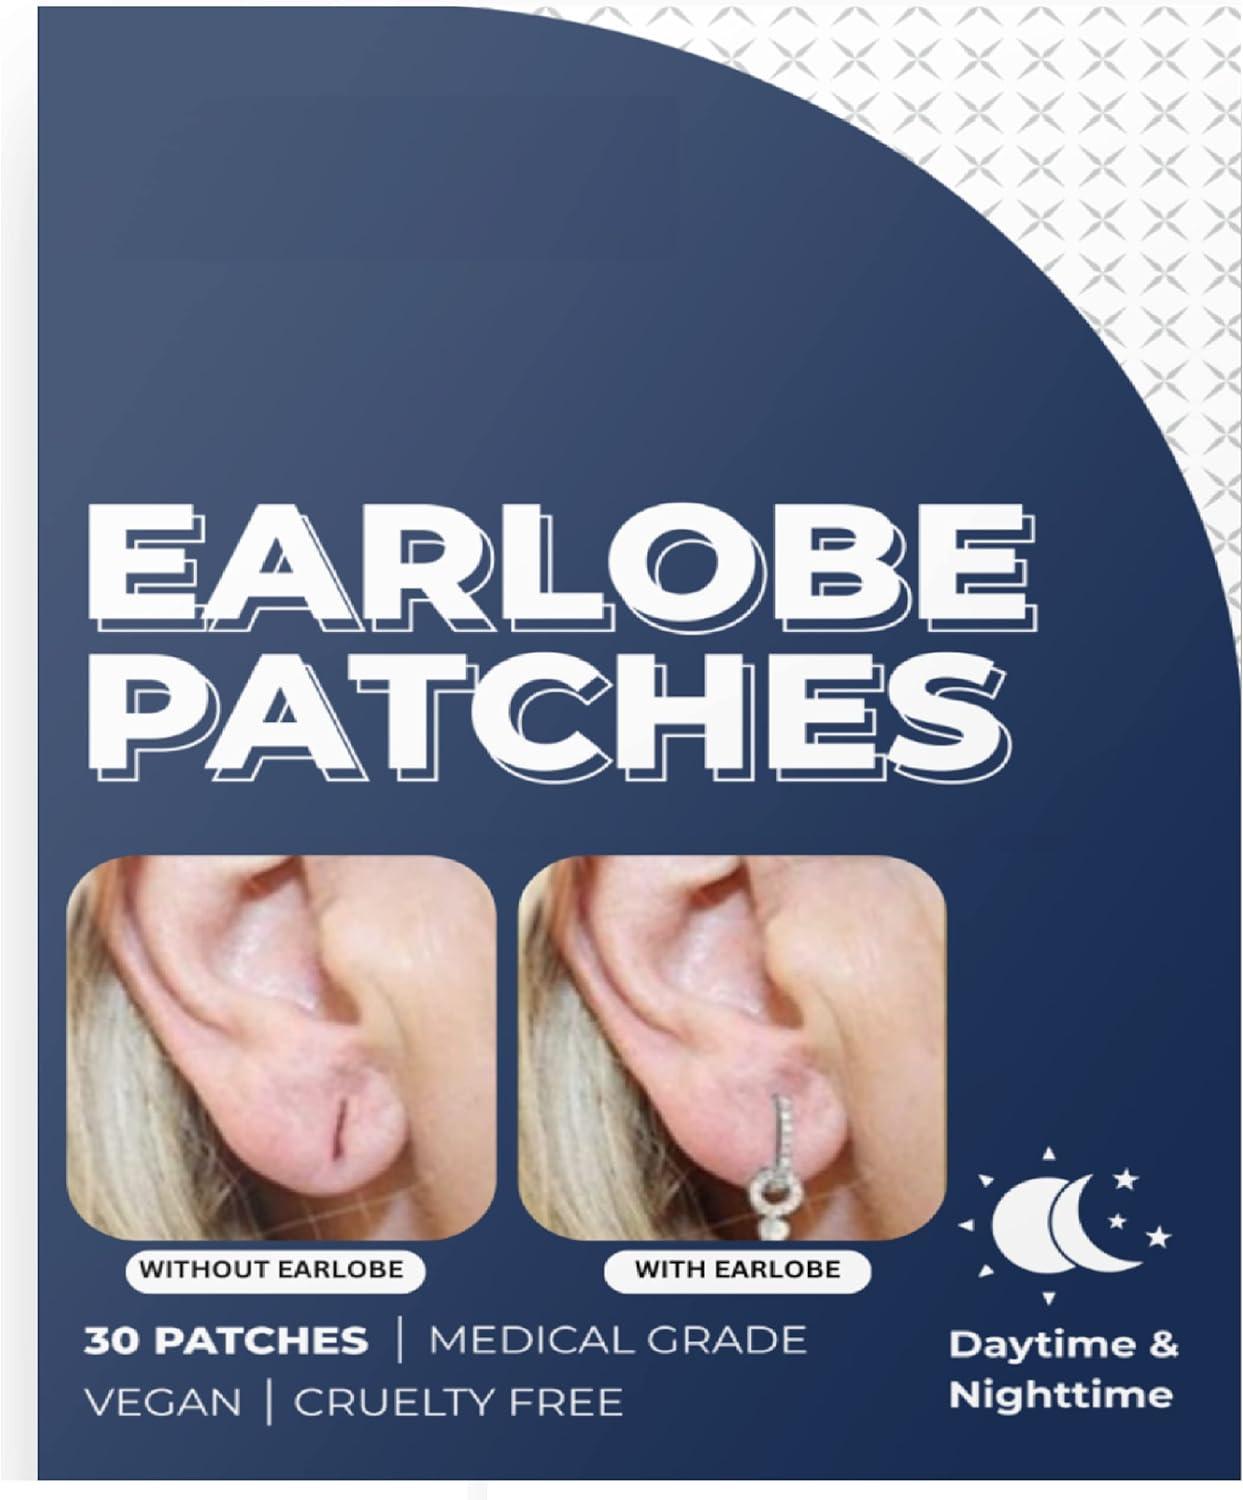 Buy INSIME Ear lobe support for earrings, Ear stickers for heavy earrings, Invisible Earlobe supporter heavy earring, Ear lock supporting patches